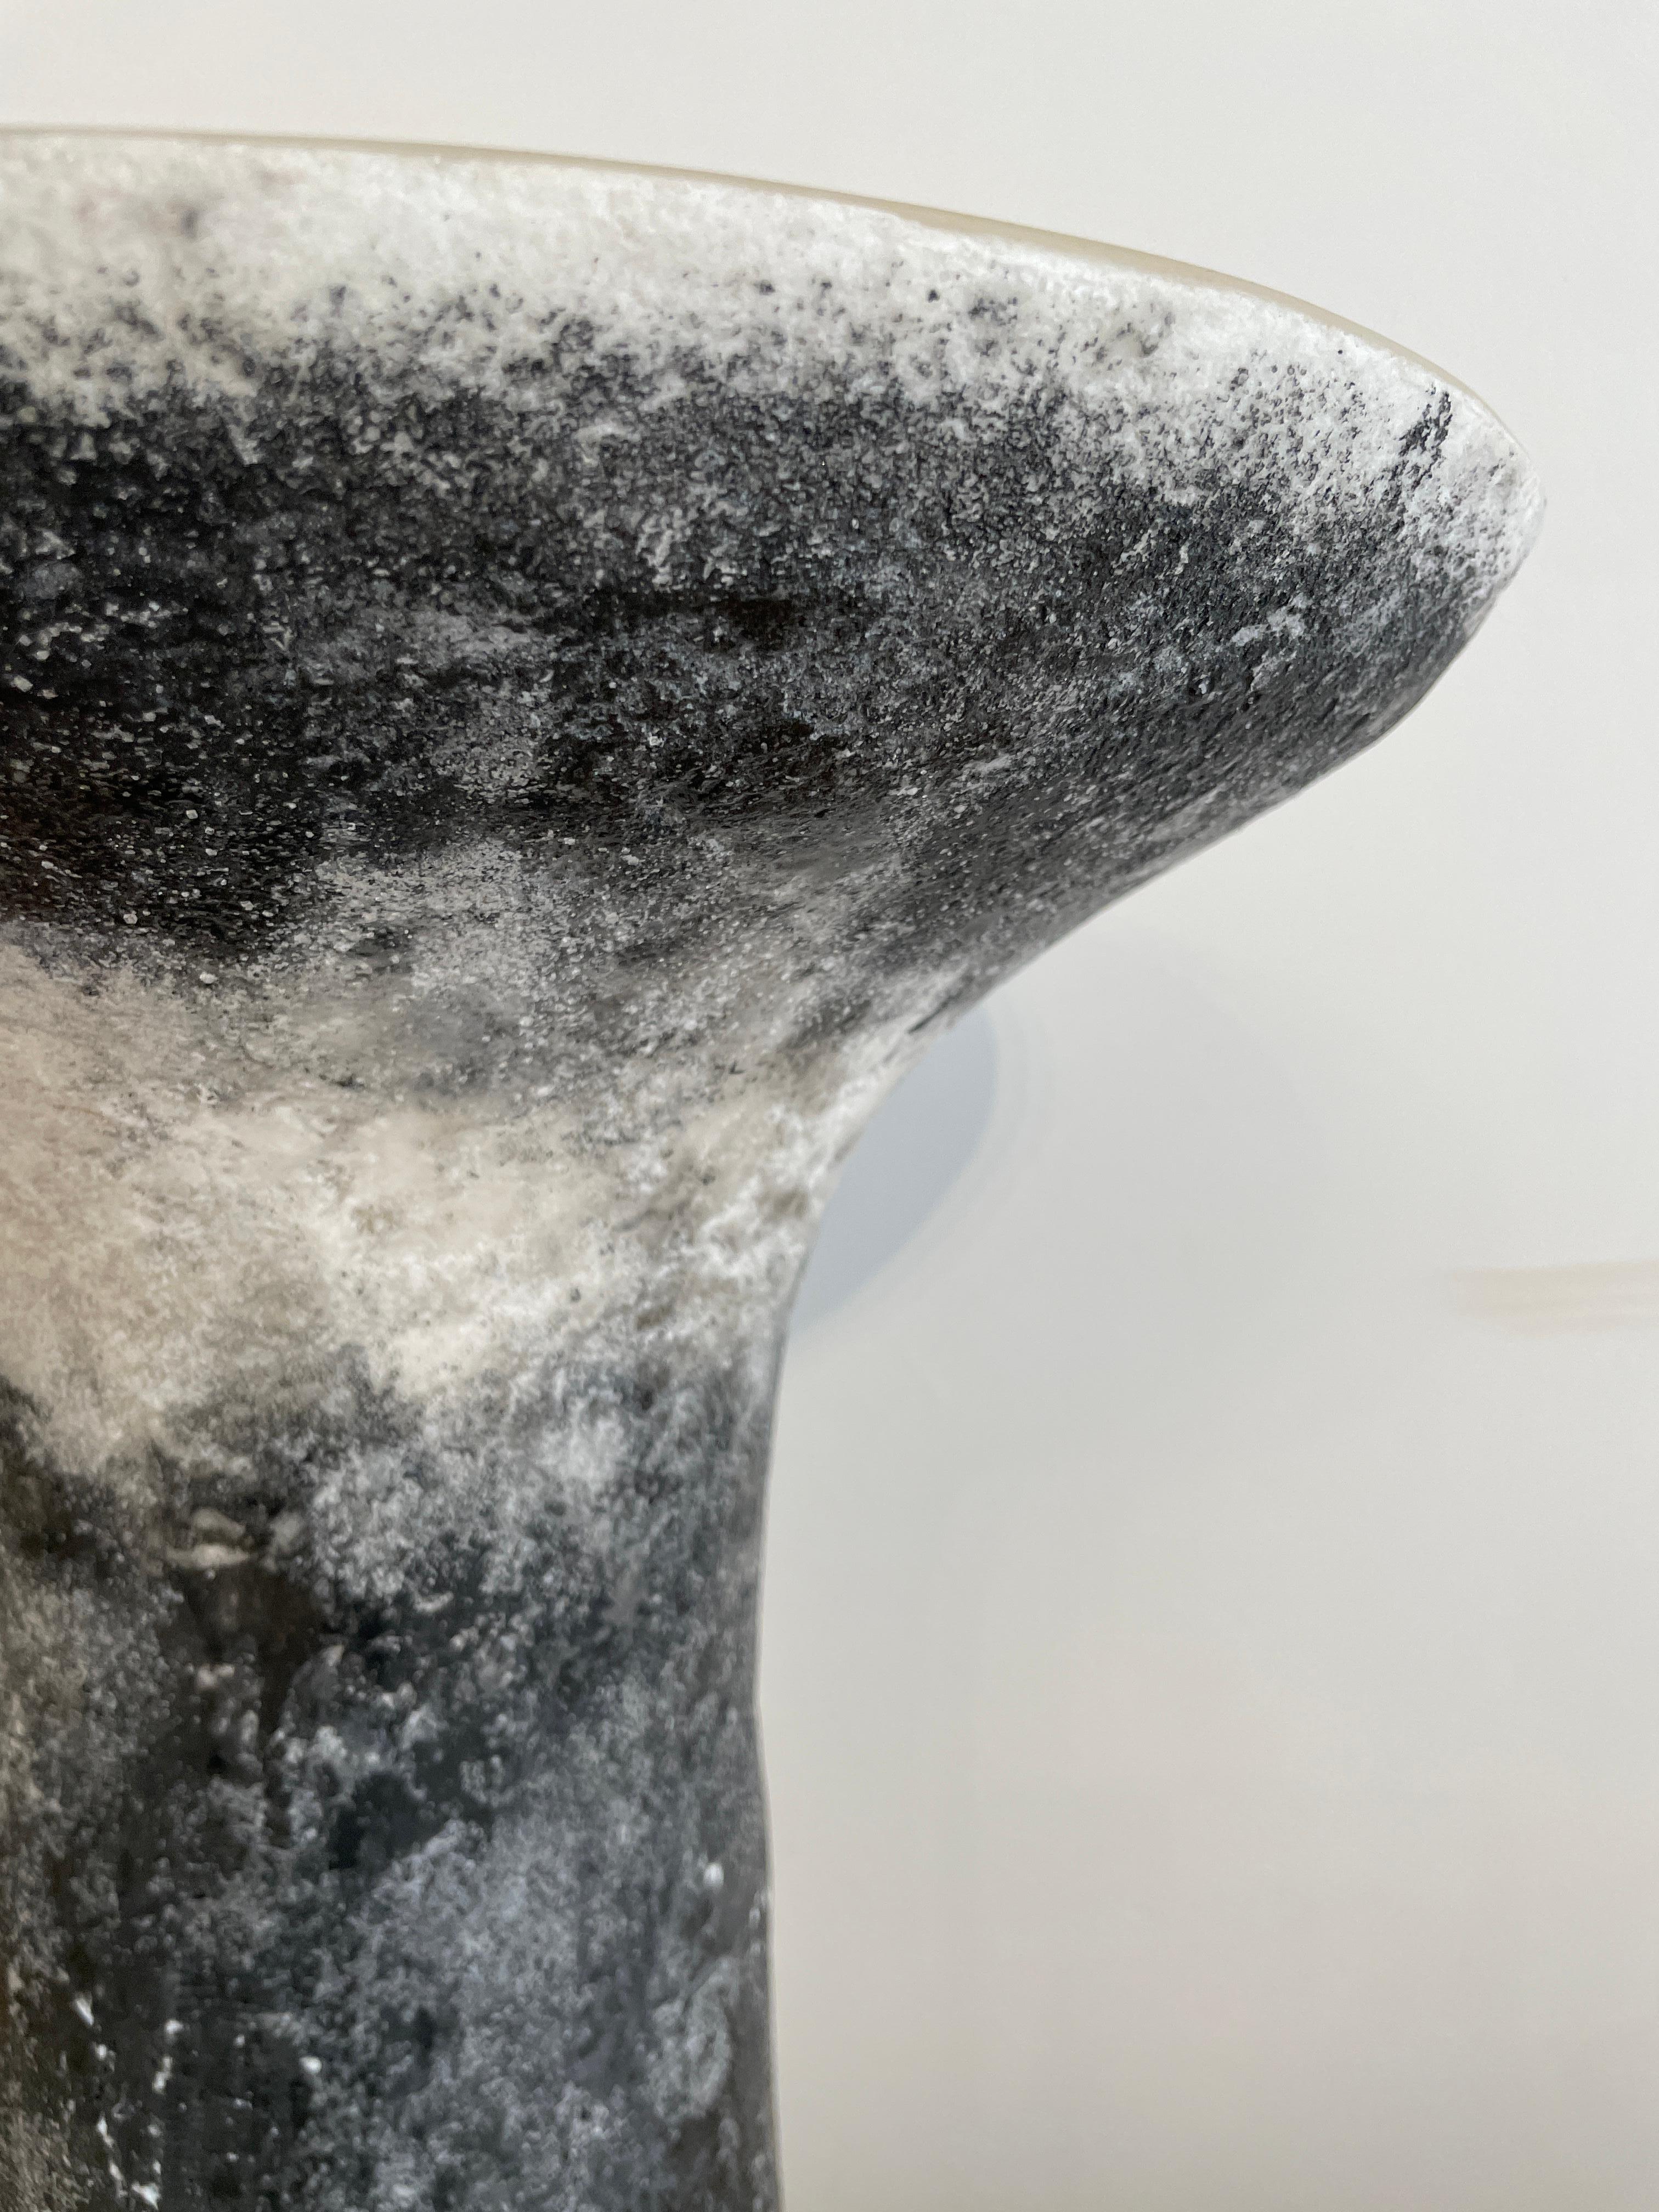 Schwarz marmorierte Salze Gueridon von Roxane Lahidji MATERIAL: Marmorierte Salze, eine einzigartige, preisgekrönte Technik, entwickelt von Roxane Lahidji Abmessungen: 40 x T 38 cm Einzigartiger Gueridon  Preisträger der Bolia Design Awards 2019 und